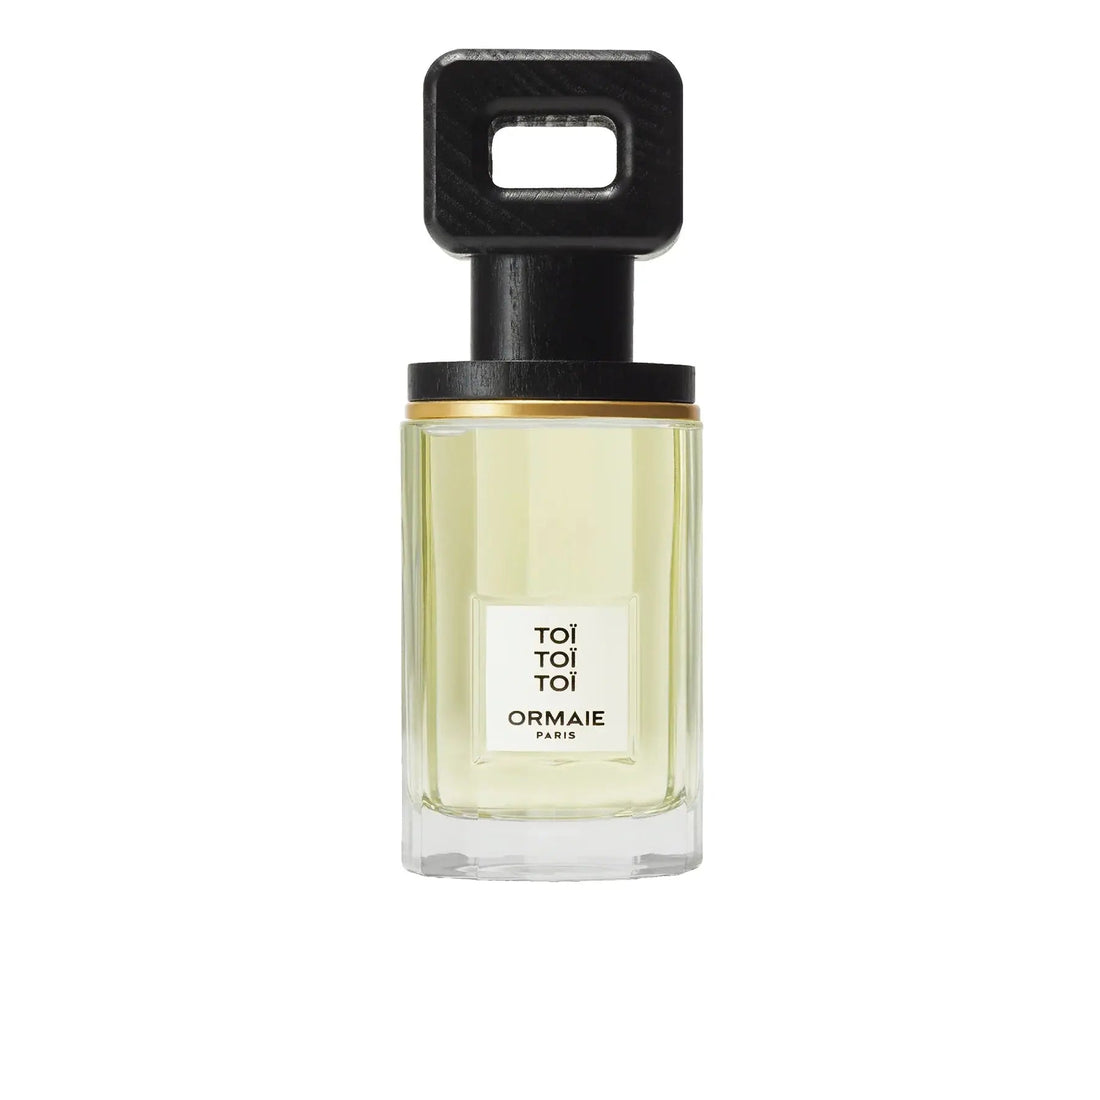 Ormaie Toi Toi Toi eau de parfum - 100 ml